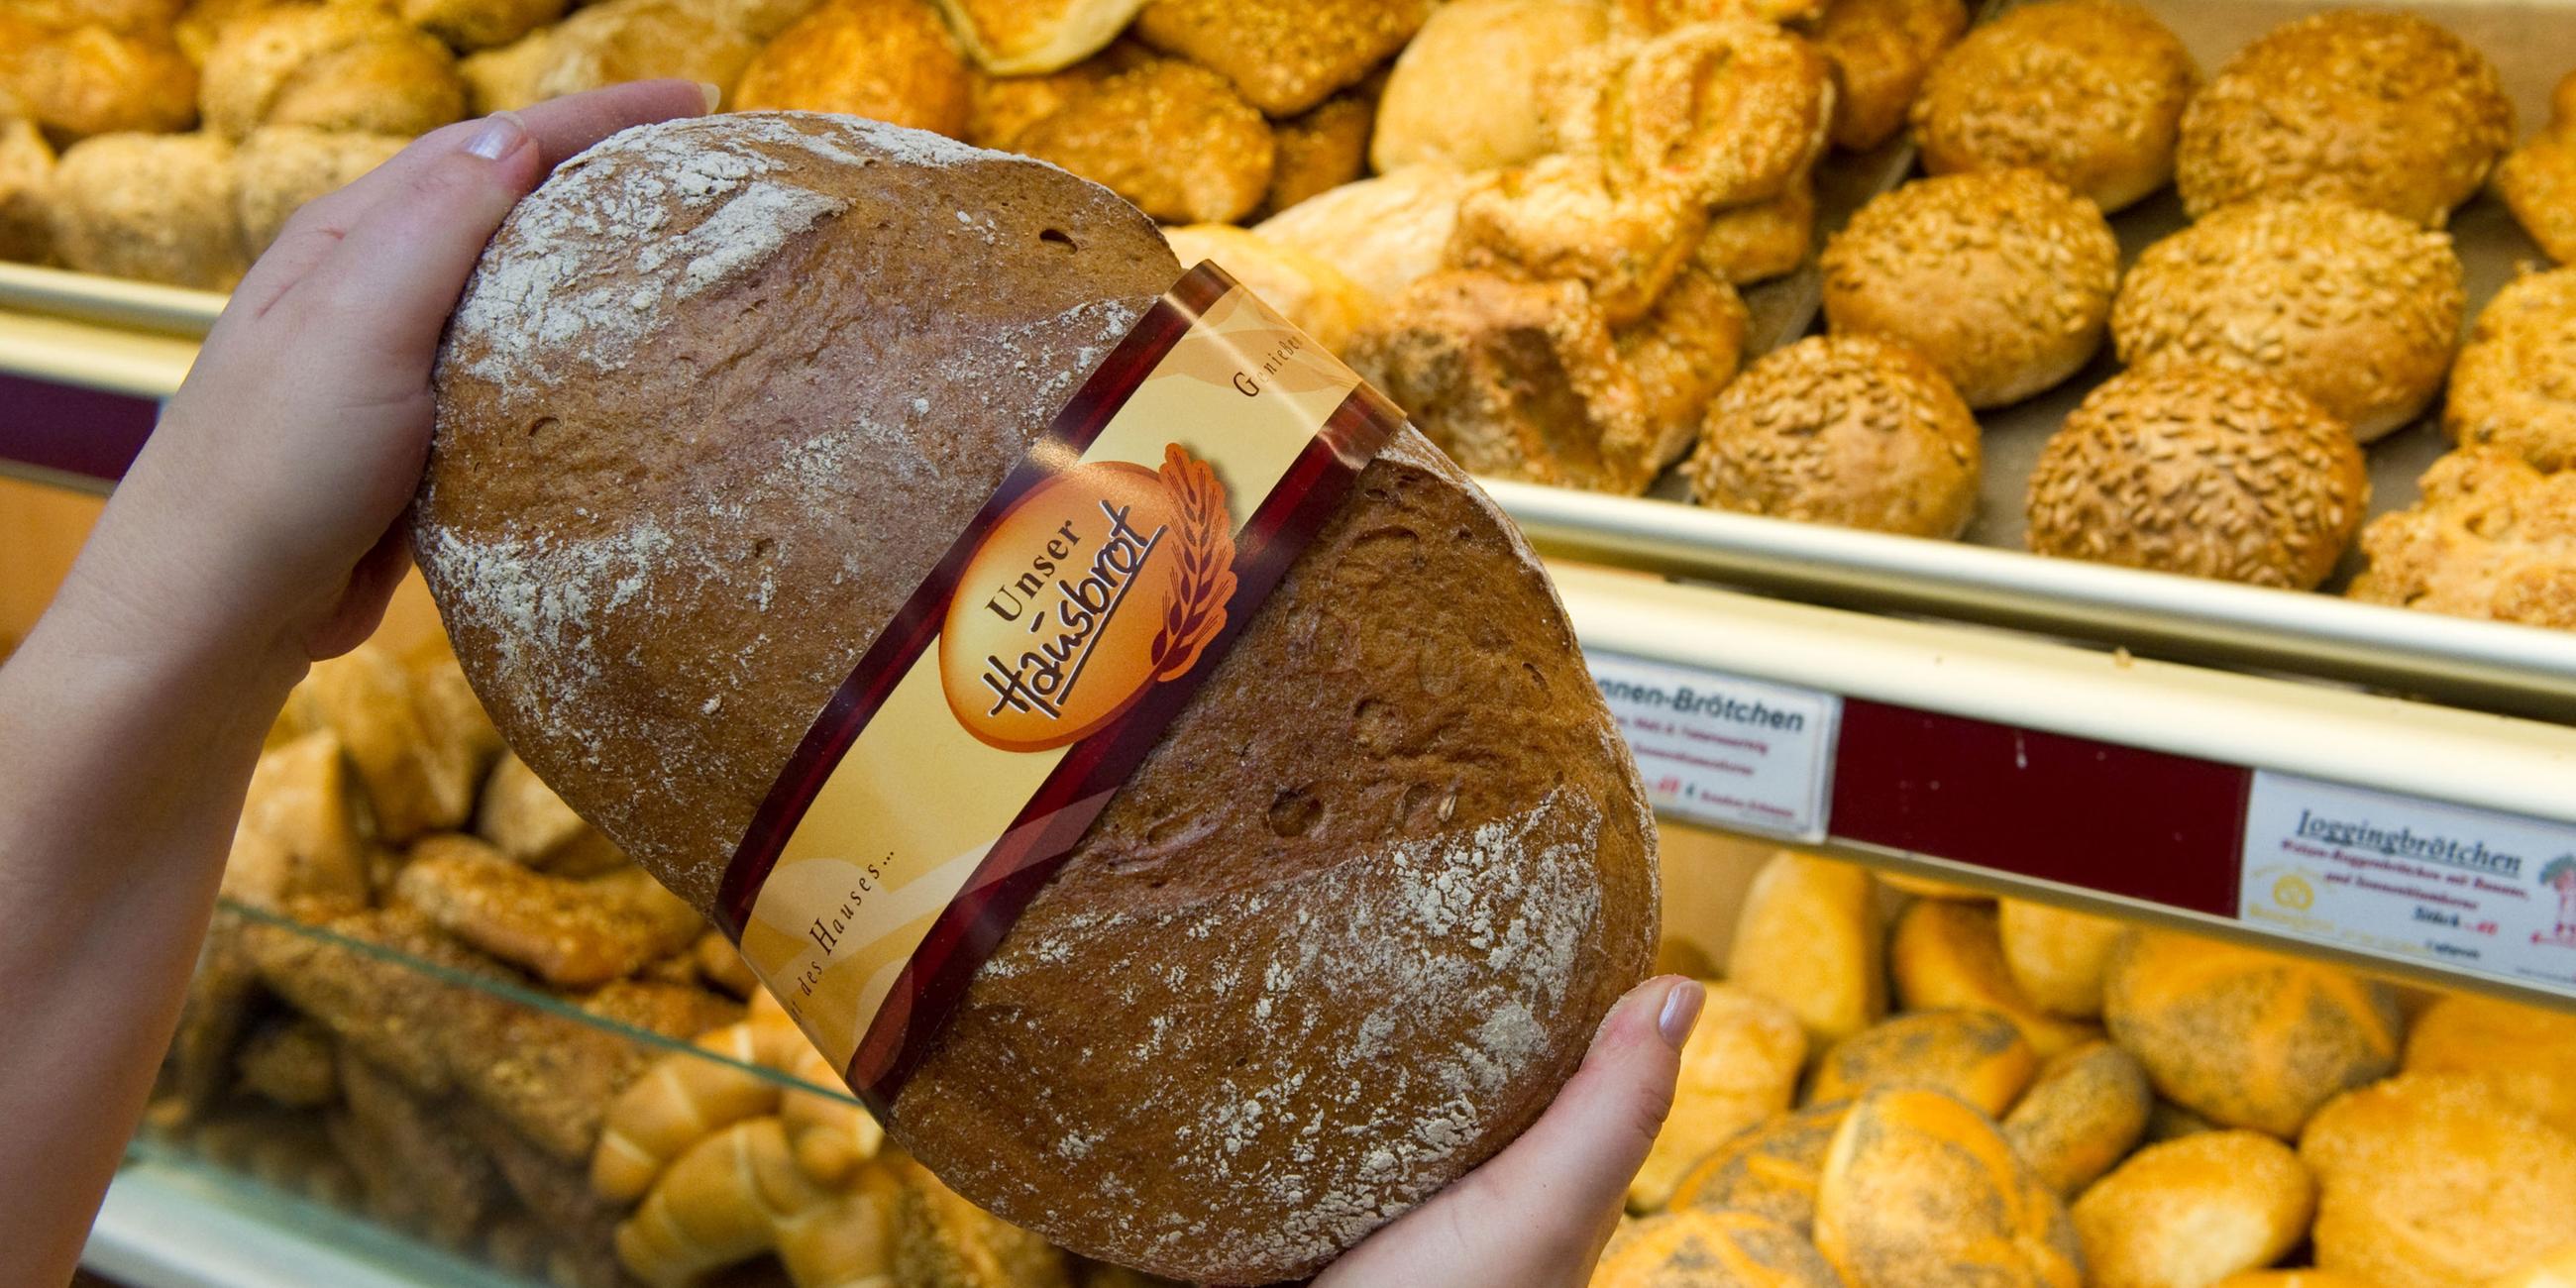 Eine Verkäuferin zeigt ein Brot in einer Bäckerei